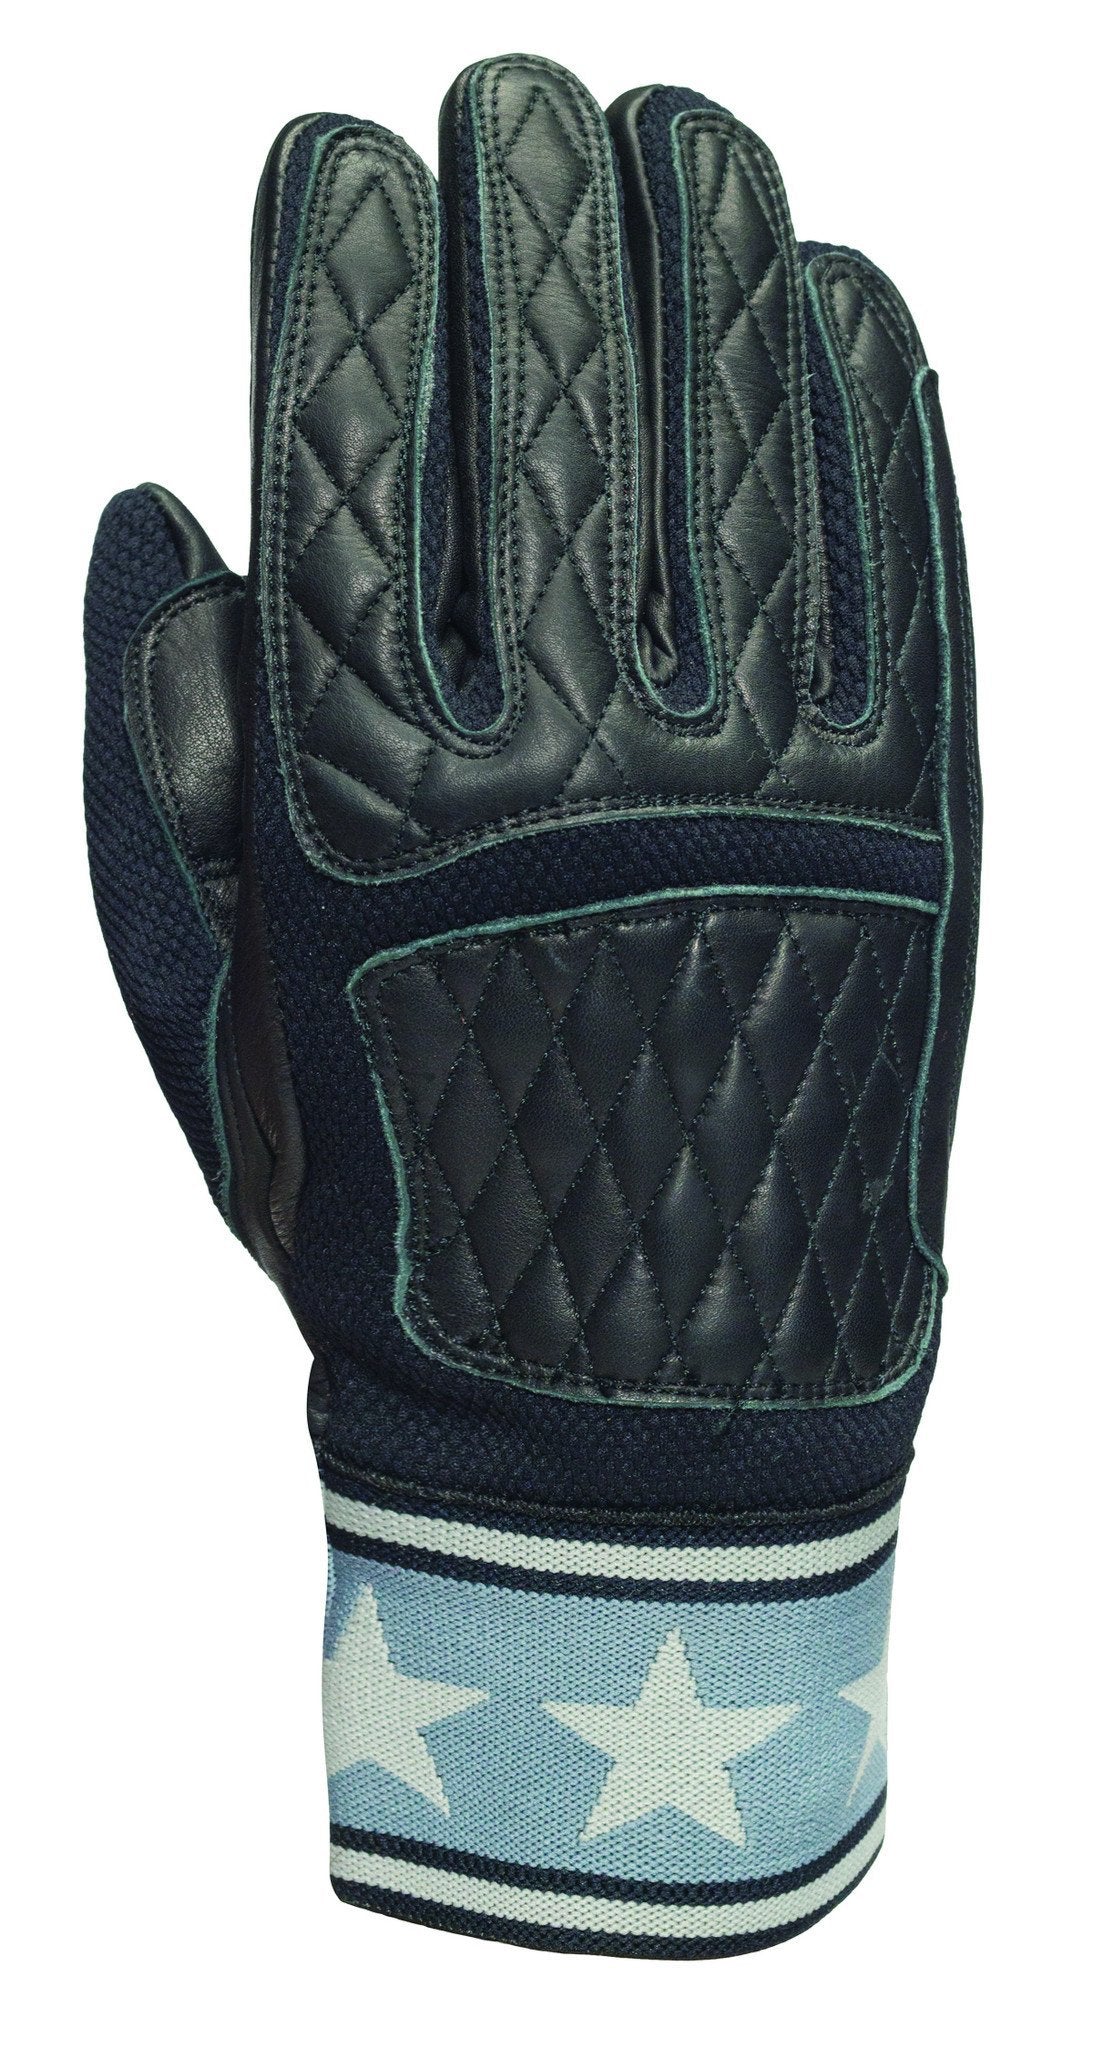 Roland Sands Design - Roland Sands Design Peristyle Gloves - Black - Gloves - Salt Flats Clothing